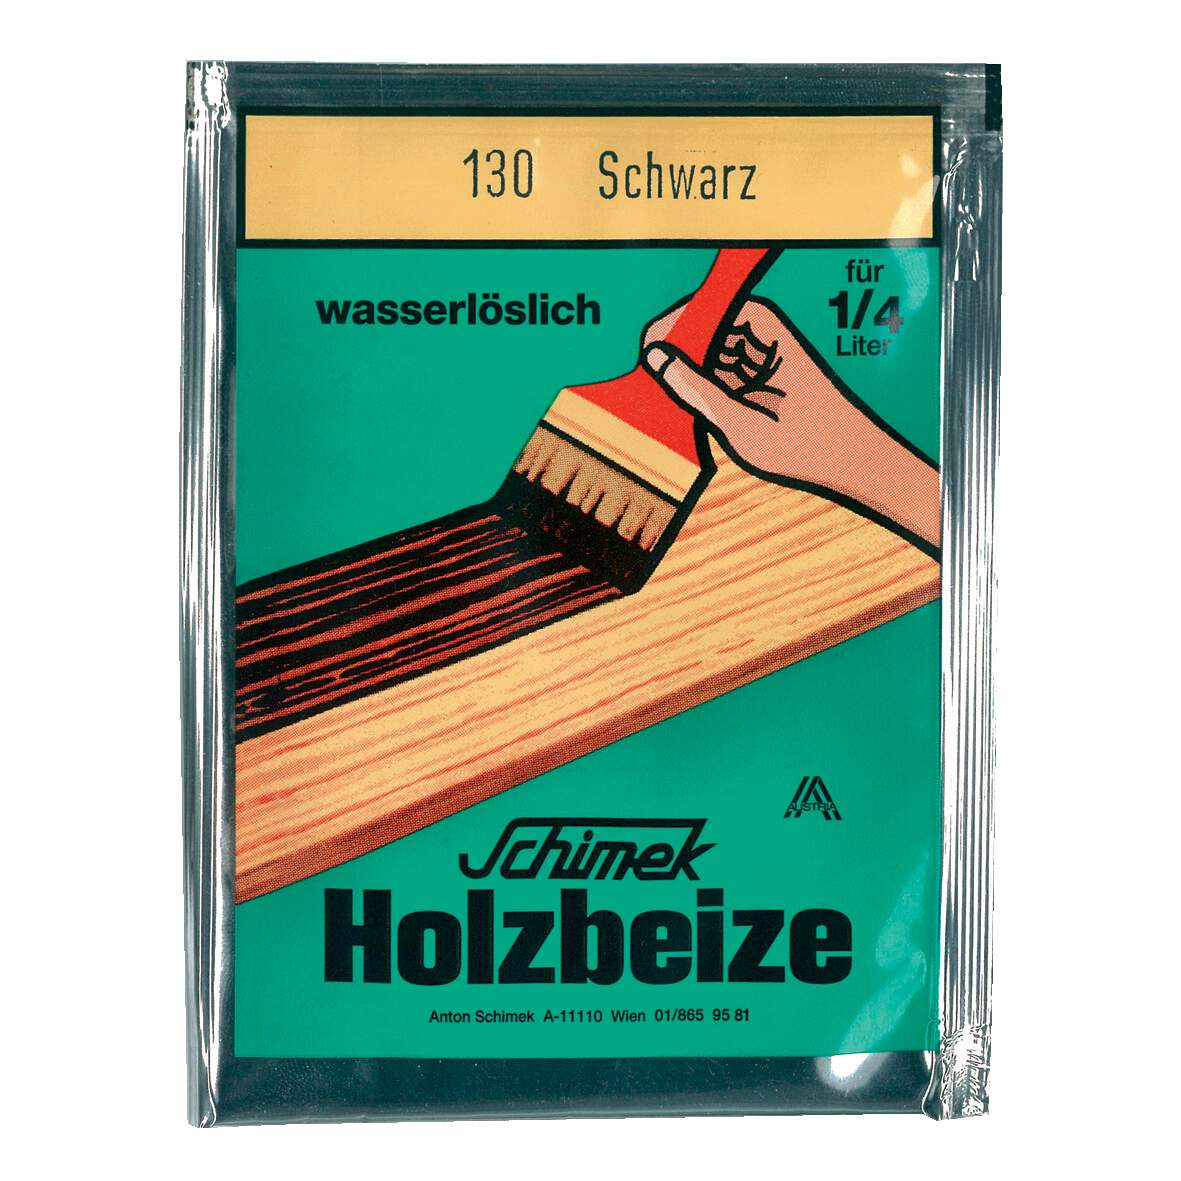 1216626 - Holzbeize wasserlöslich